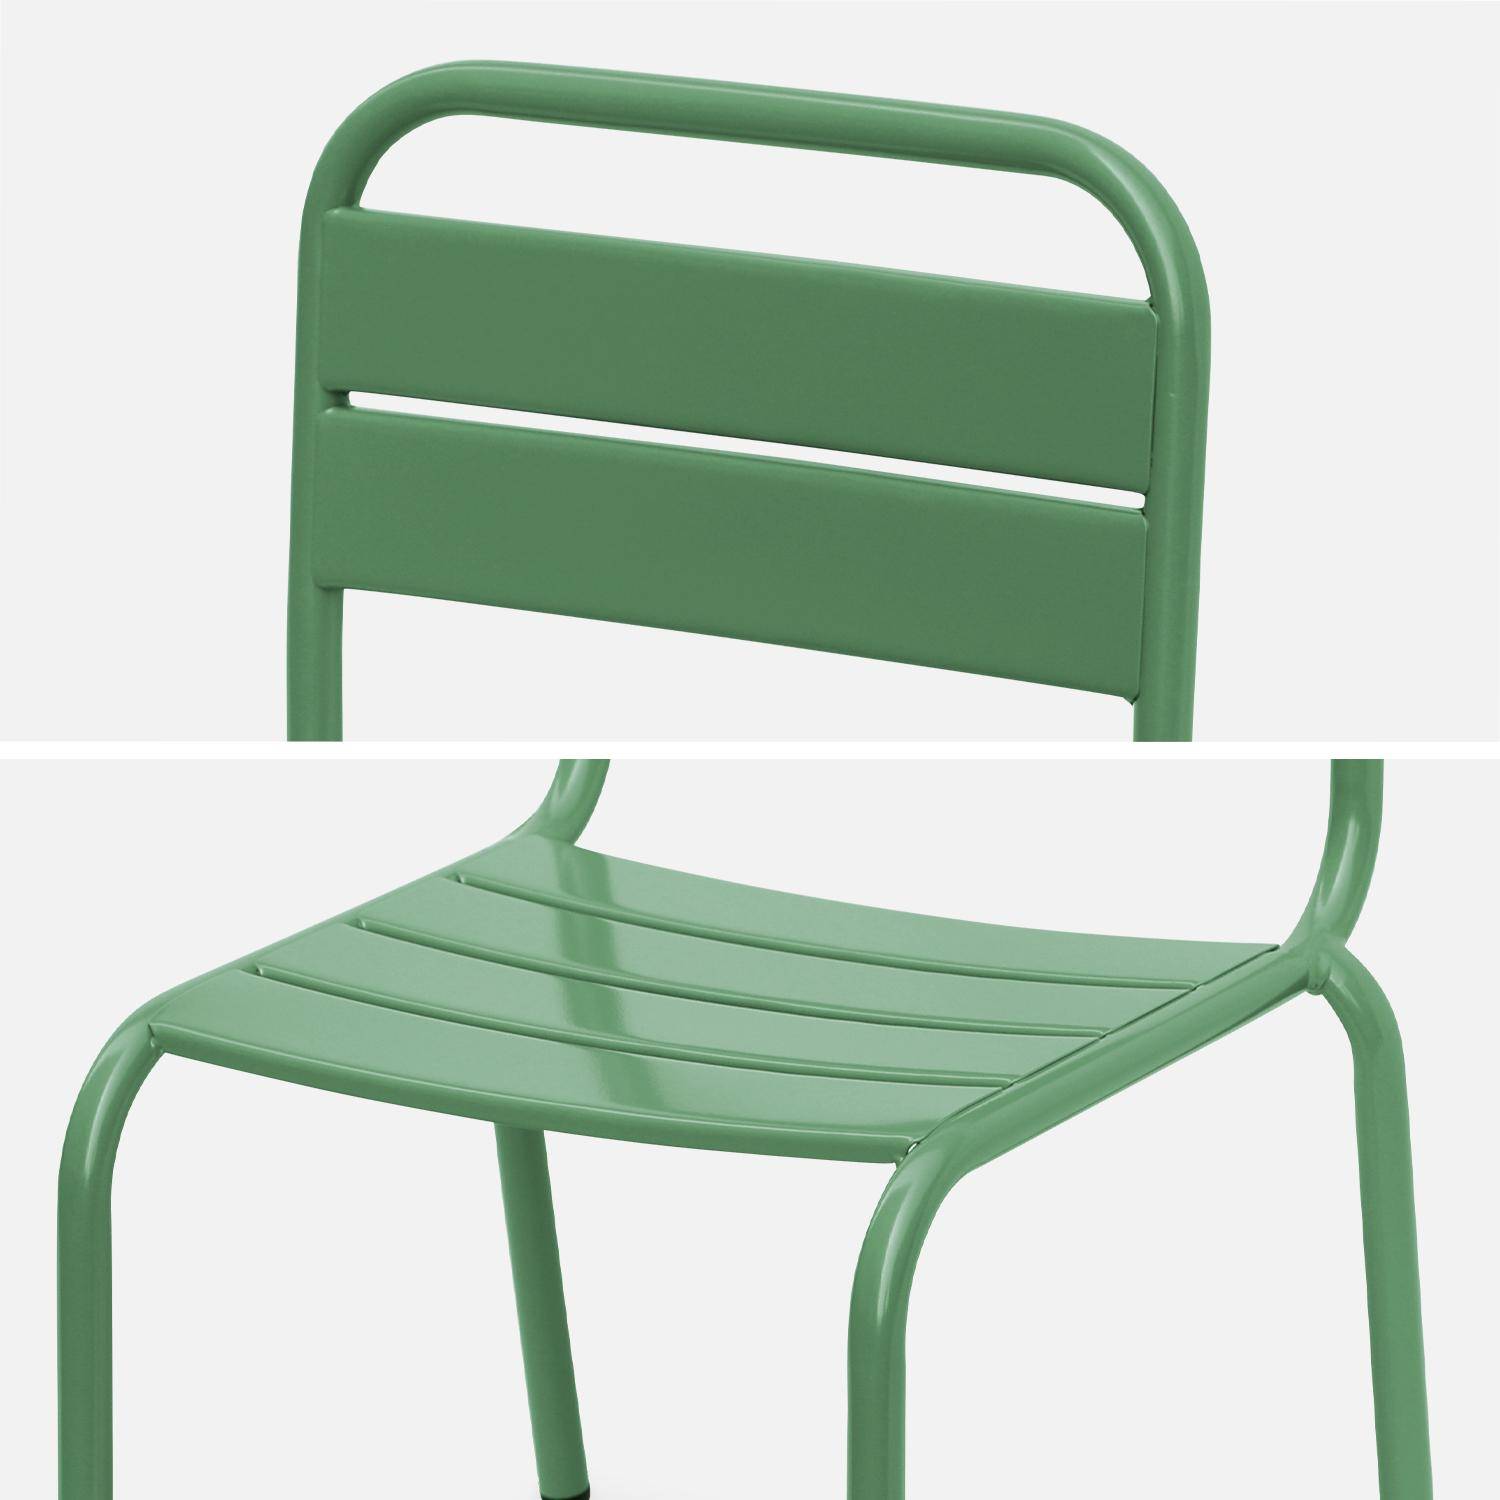 Tisch 48x48cm und 2 Stühle für Kinder, graugrün, 48x48cm, für draußen verwendbar - Anna,sweeek,Photo7